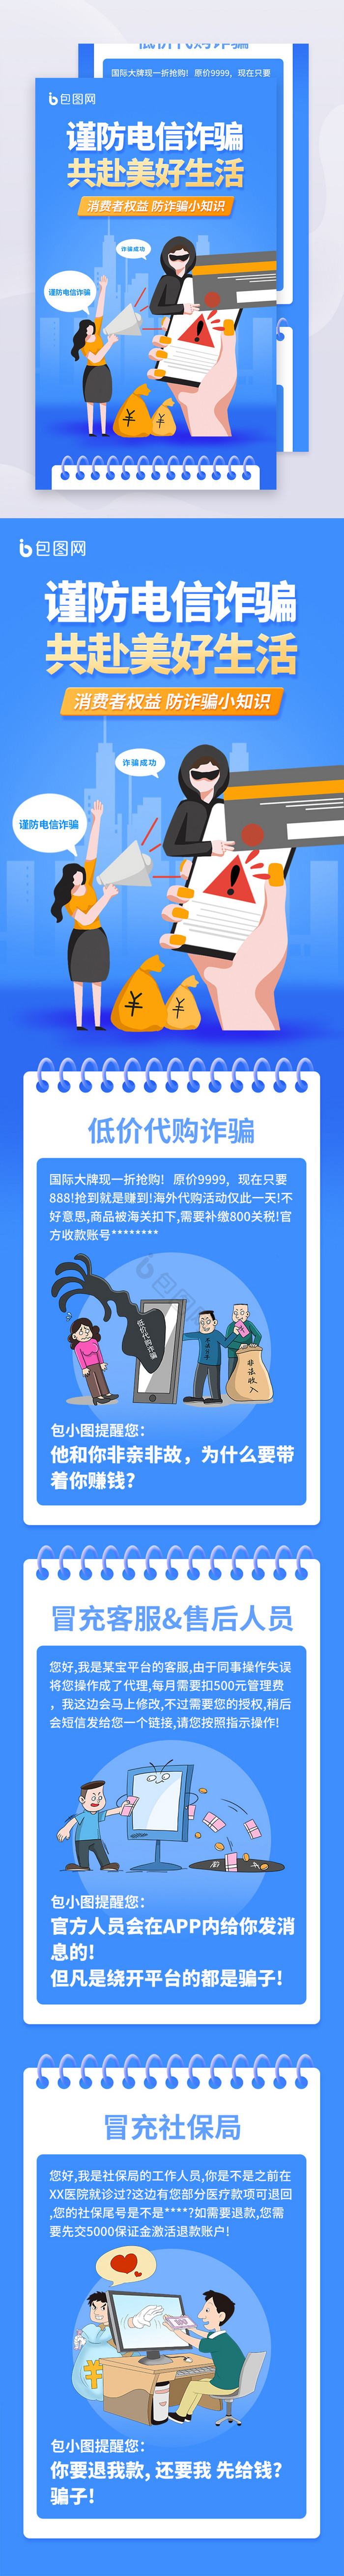 反诈骗宣传公益H5长图